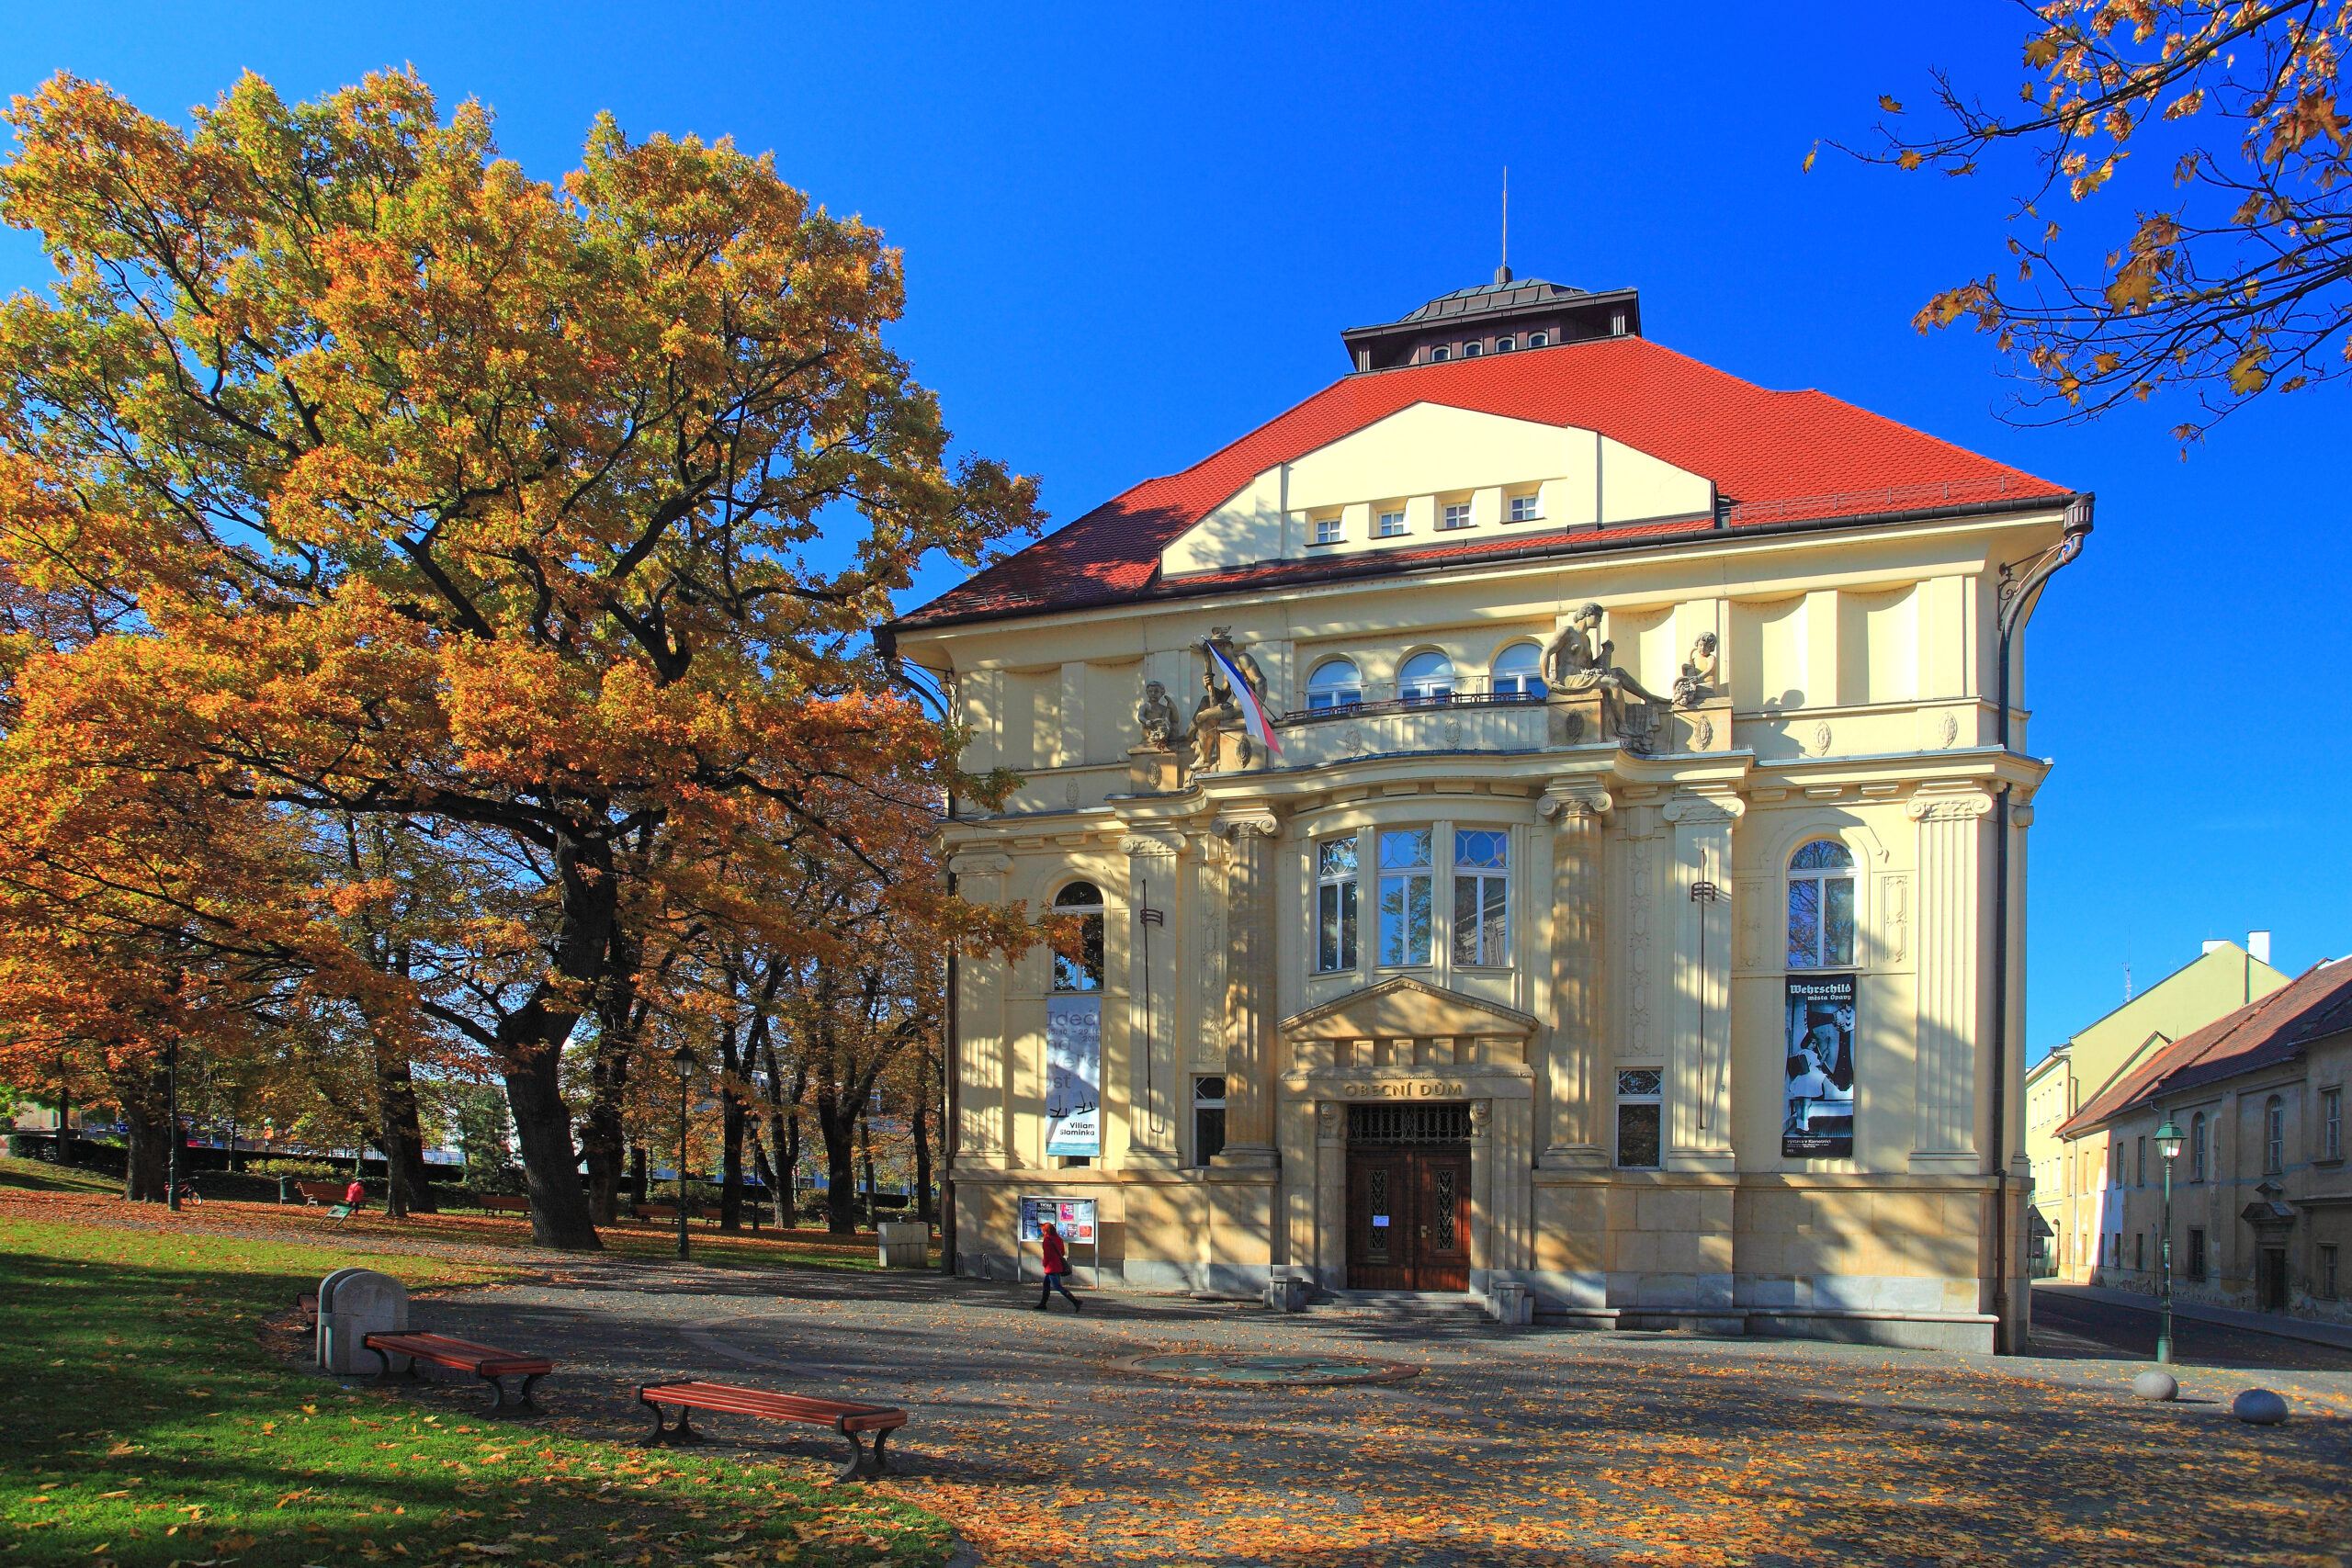 The Obecní dům (Municipal House) in Opava